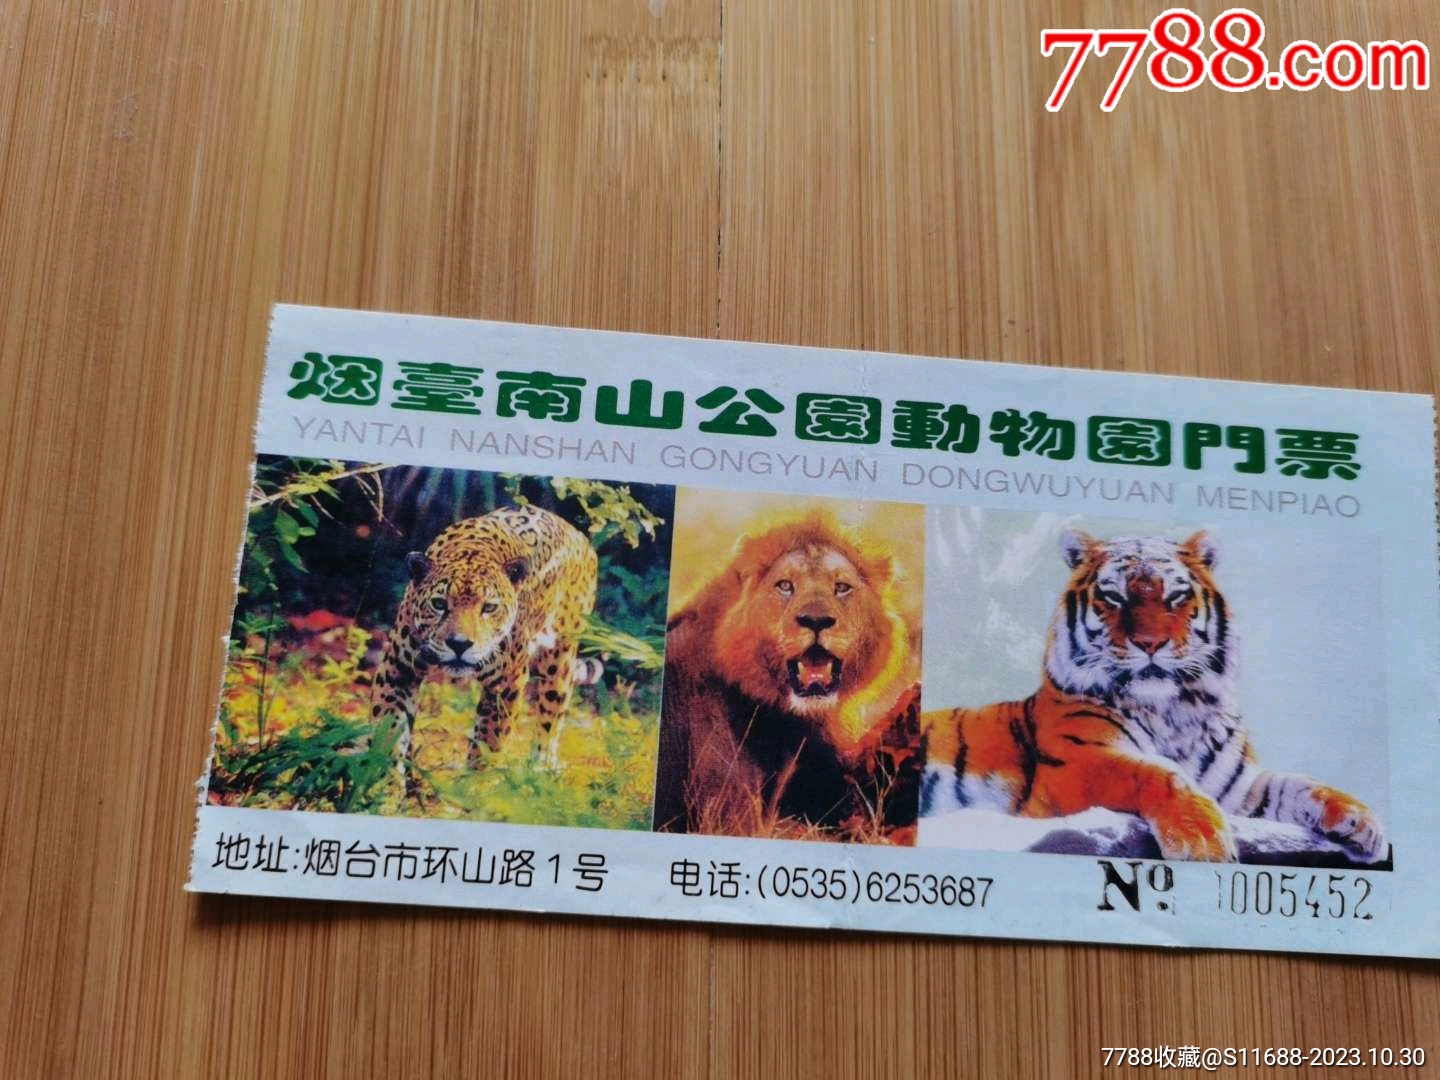 【携程攻略】南山公园动物园门票,烟台南山公园动物园攻略/地址/图片/门票价格